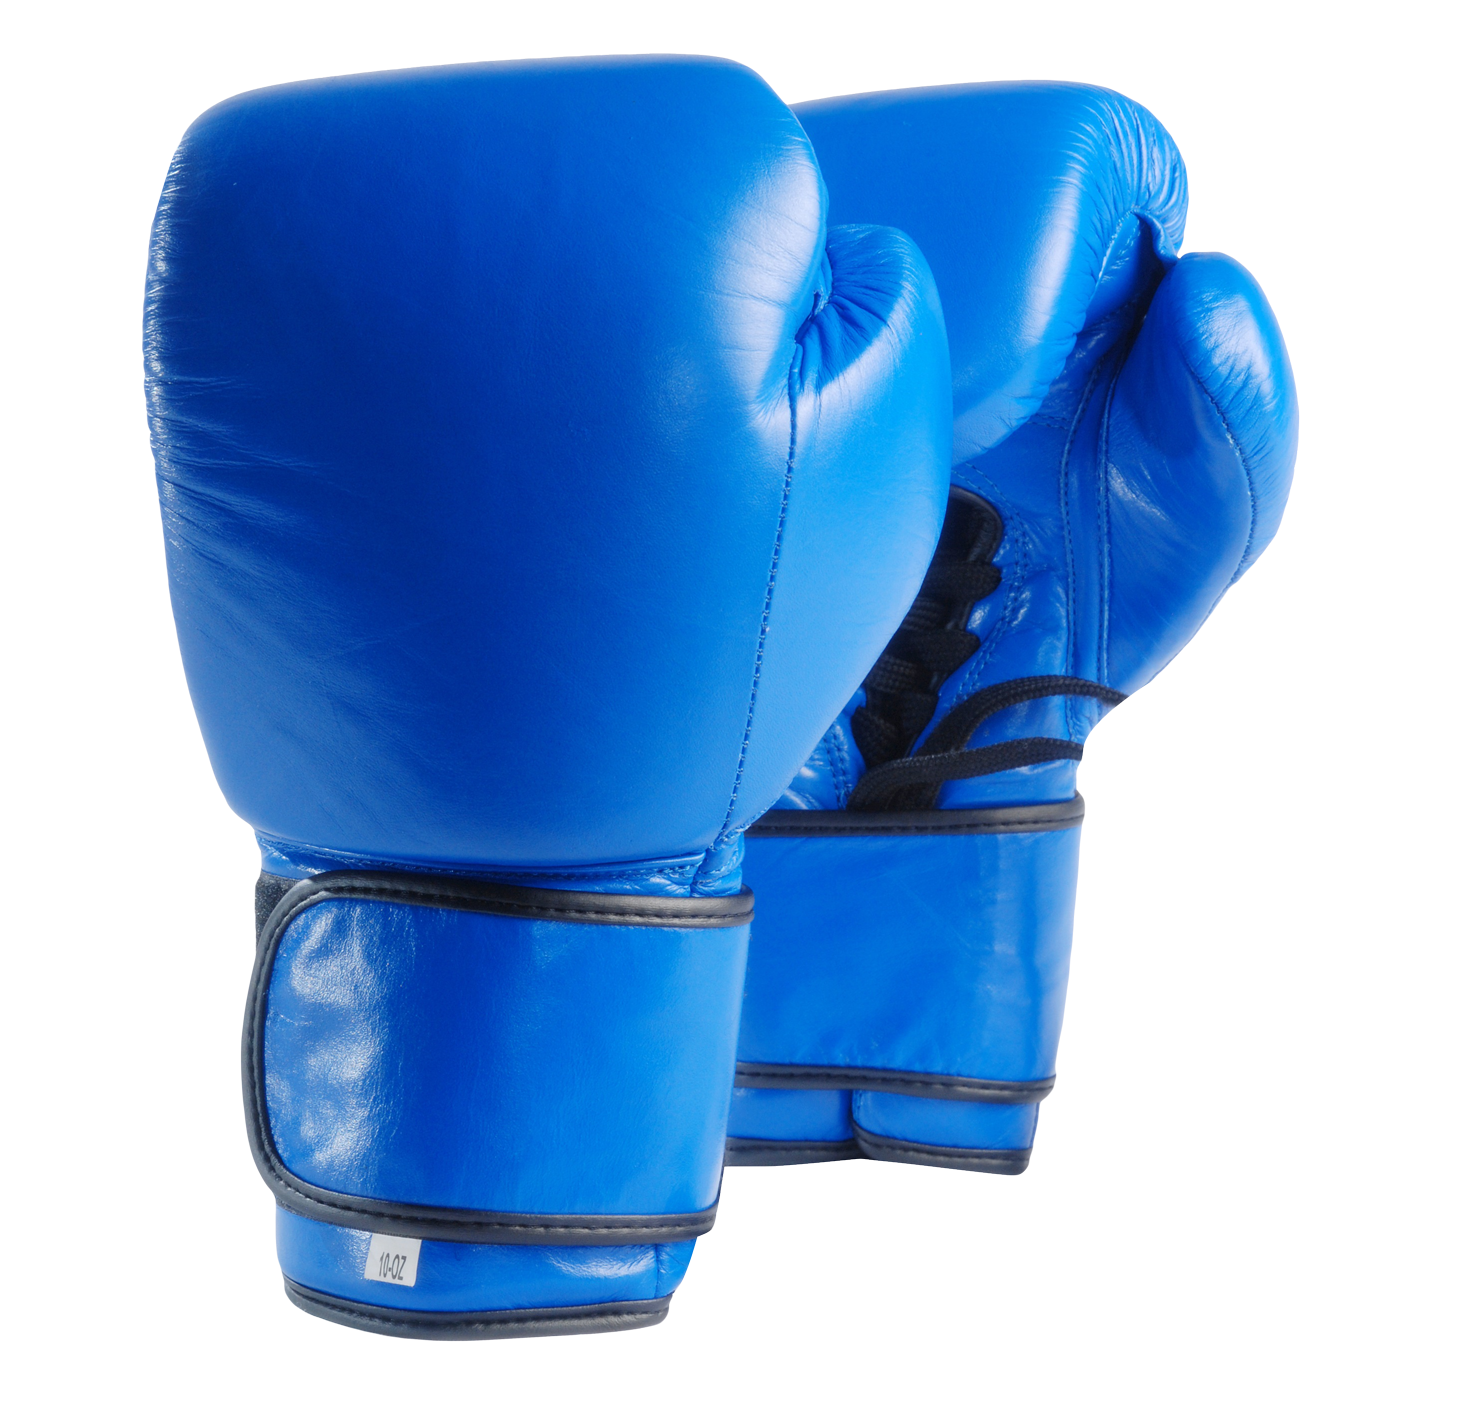 Blue Boxing Gloves Transparent Background